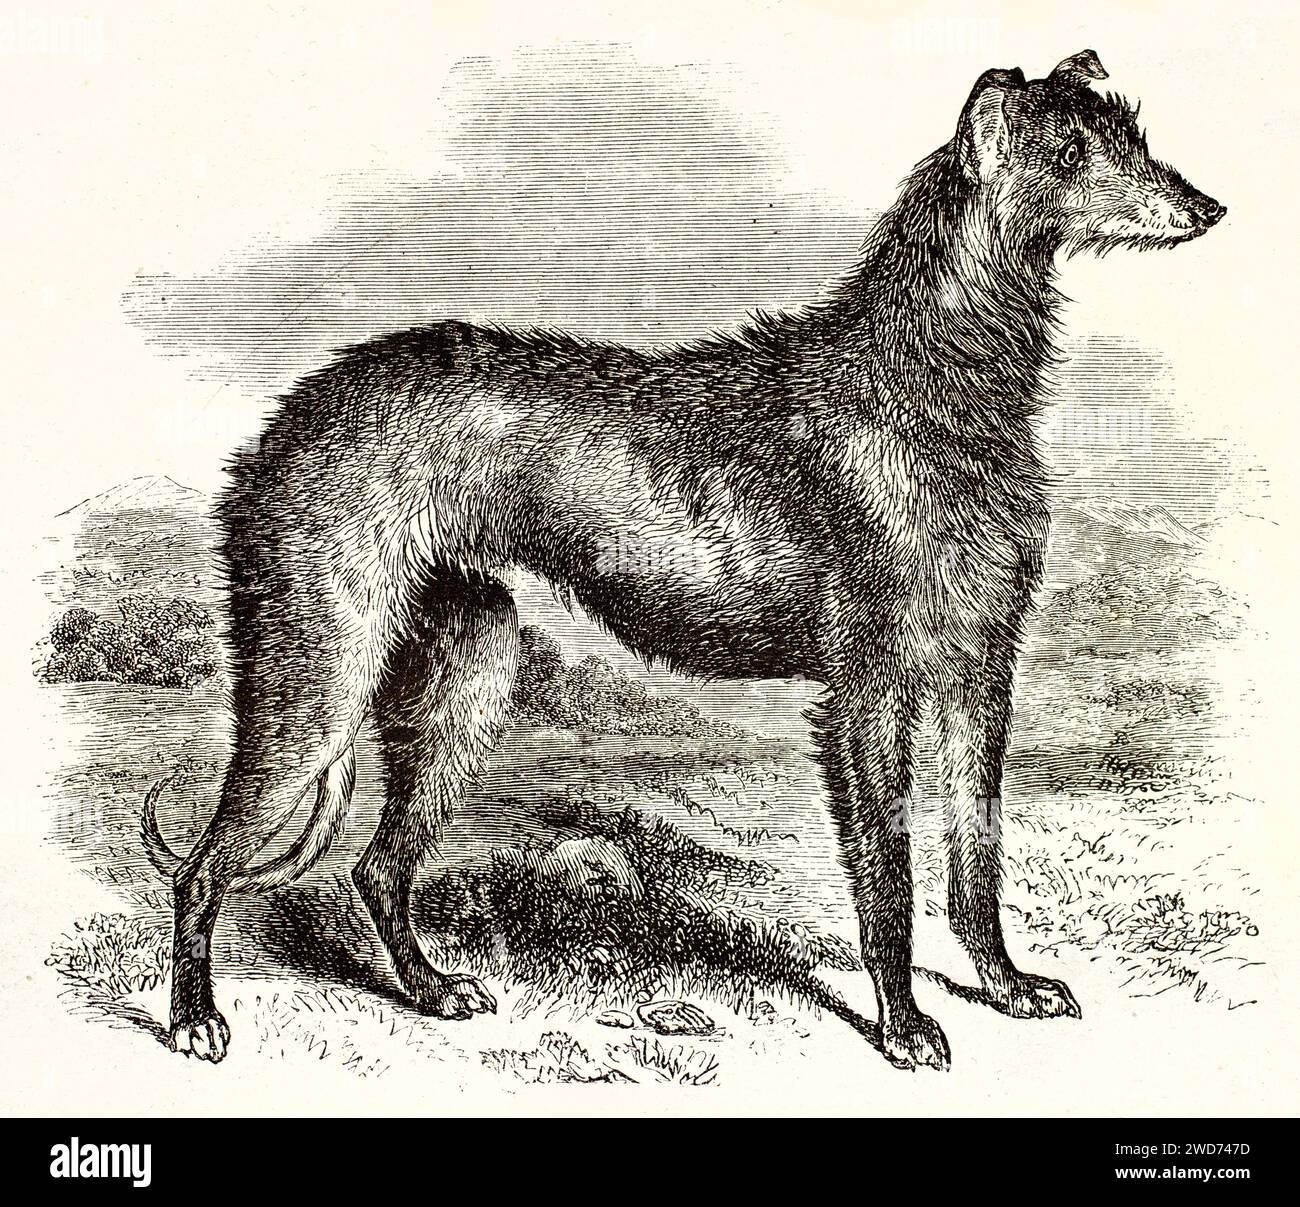 Vecchia illustrazione incisa di Scottish Deerhound. Creato da Wells, pubblicato su Brehm, Les Mammifers, Baillière et fils, Parigi, 1878 Foto Stock